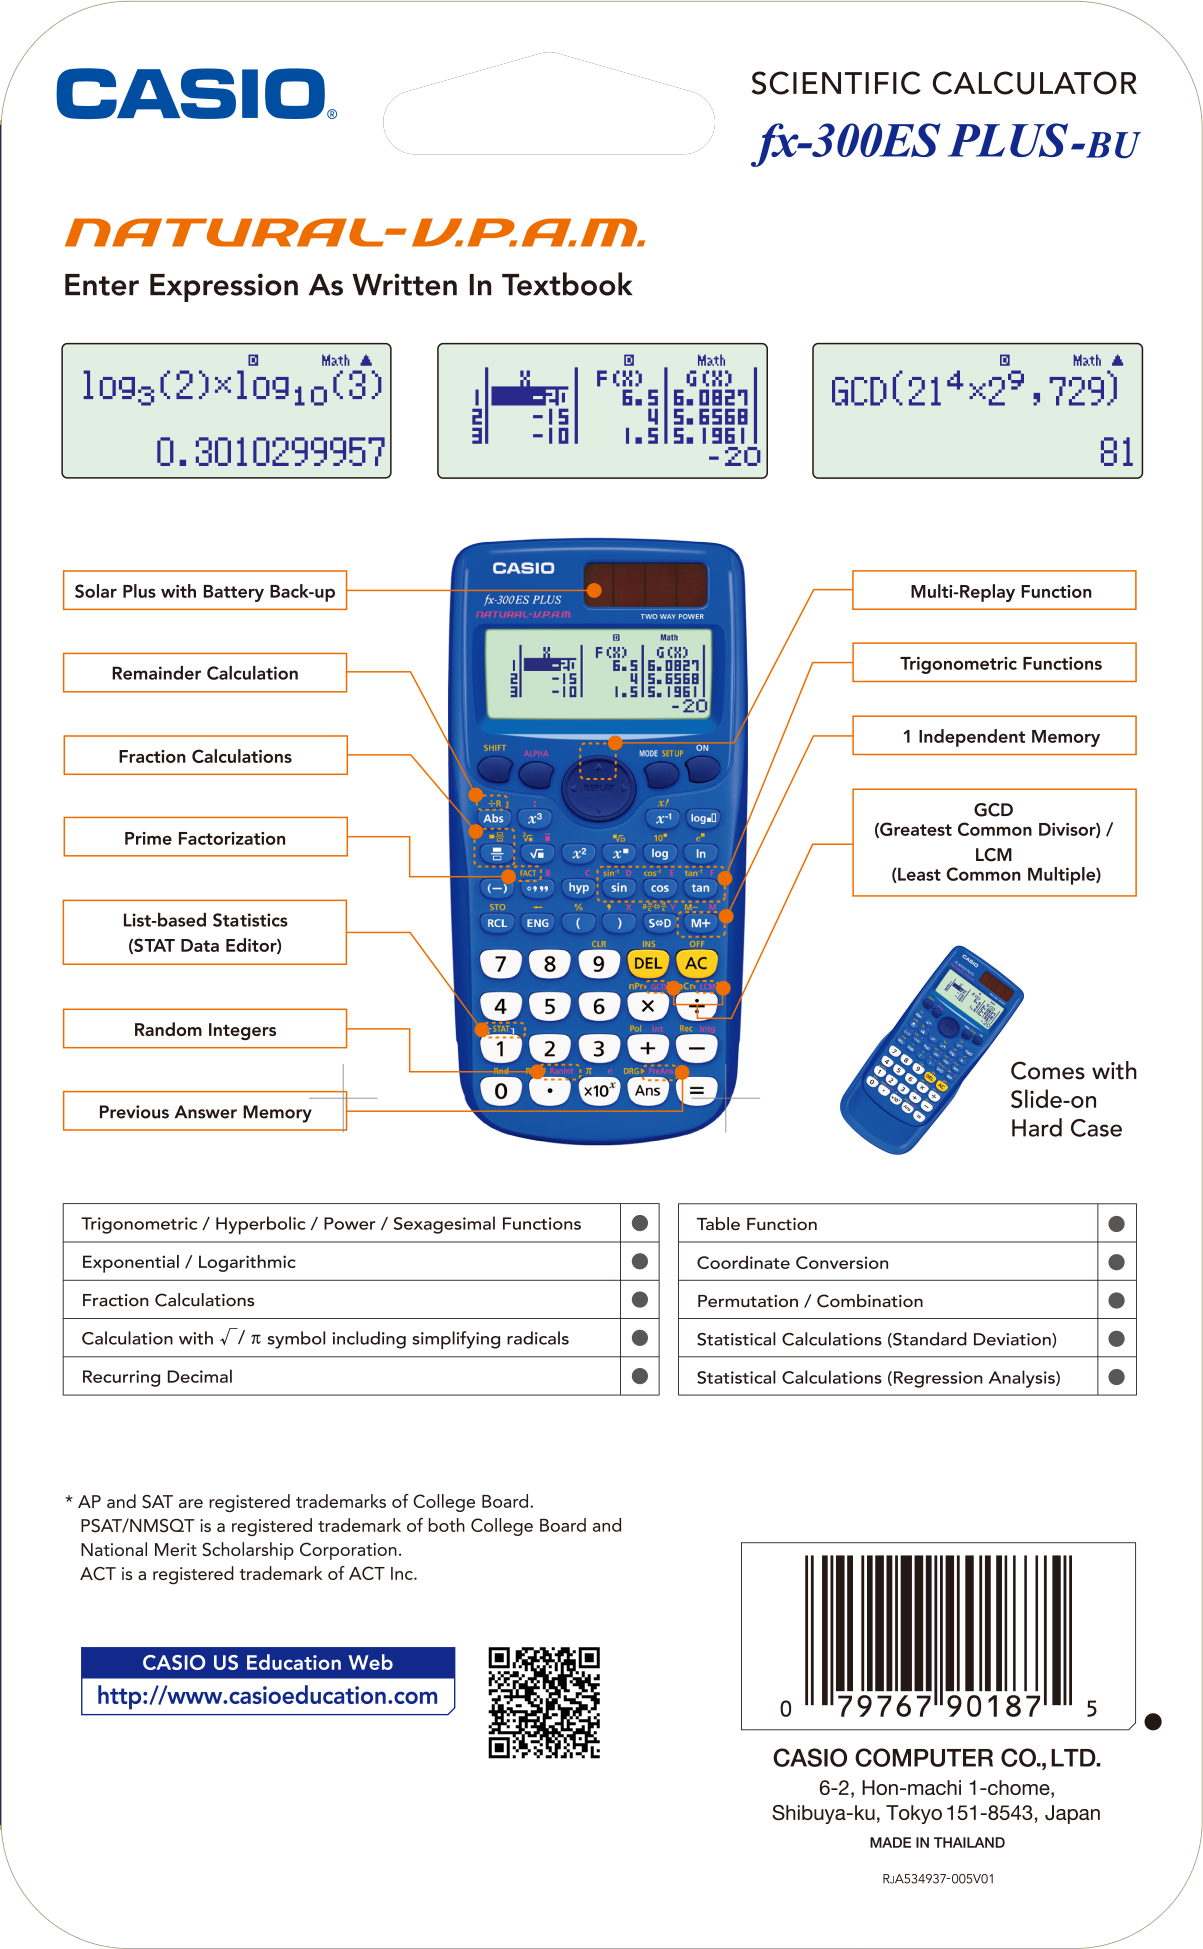 Casio FX-300ESPLUS Scientific Calculator, Natural Textbook Display, Blue - image 3 of 4